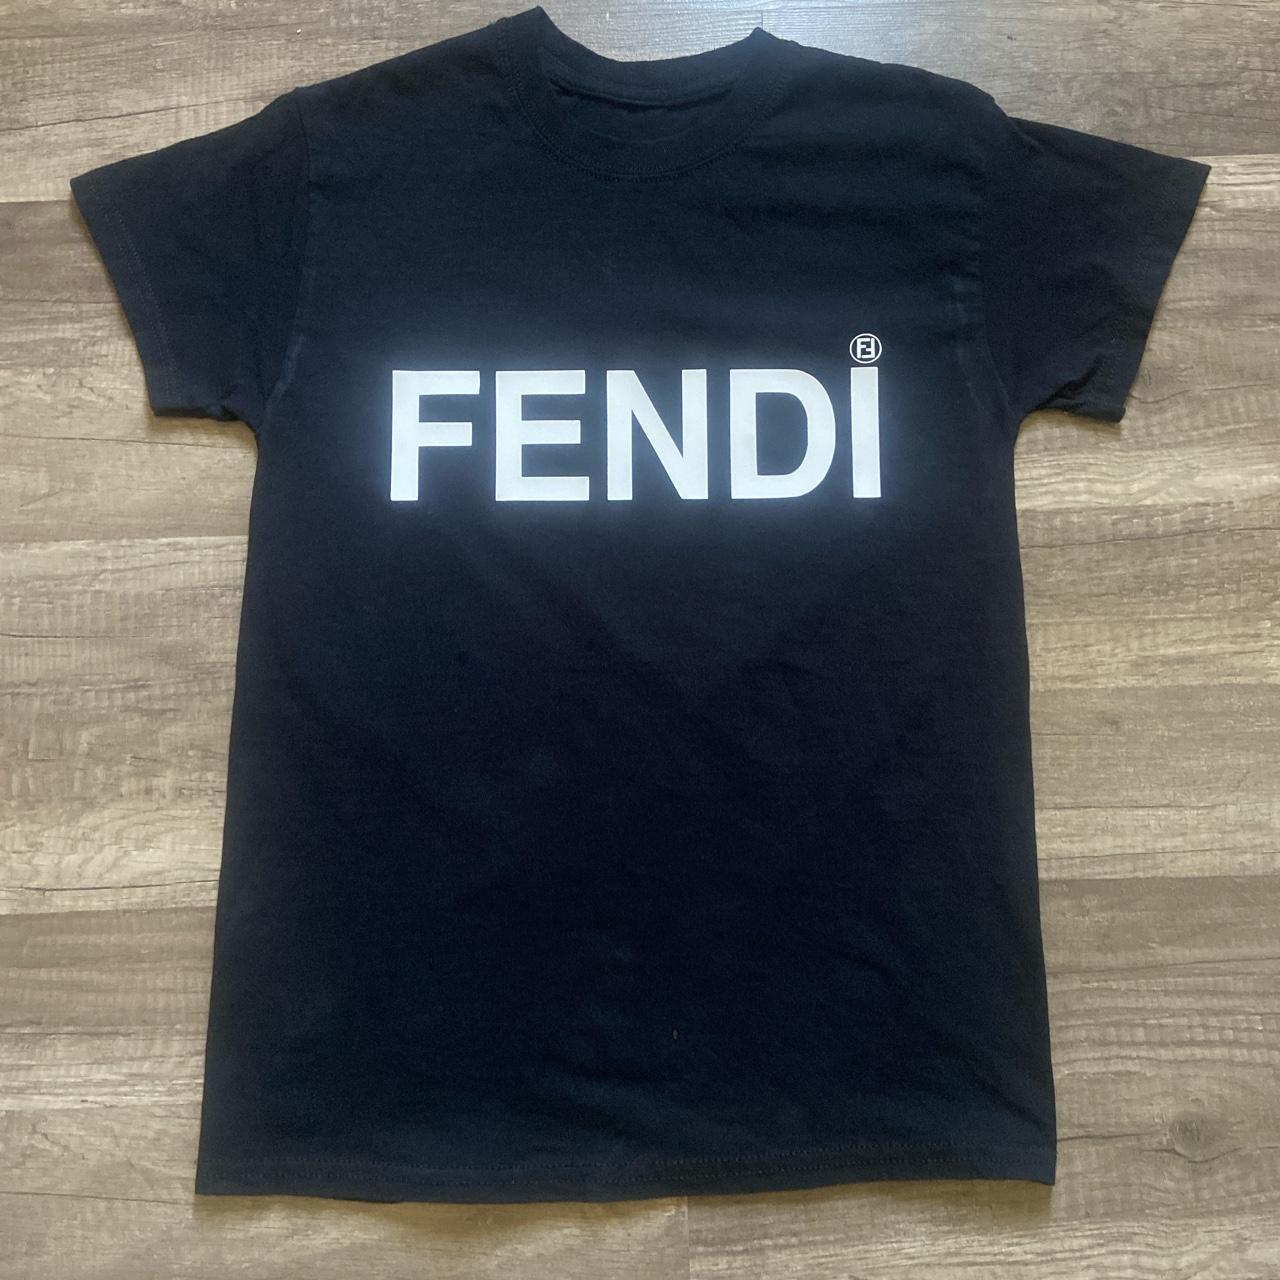 Fendi Men's Black T-shirt